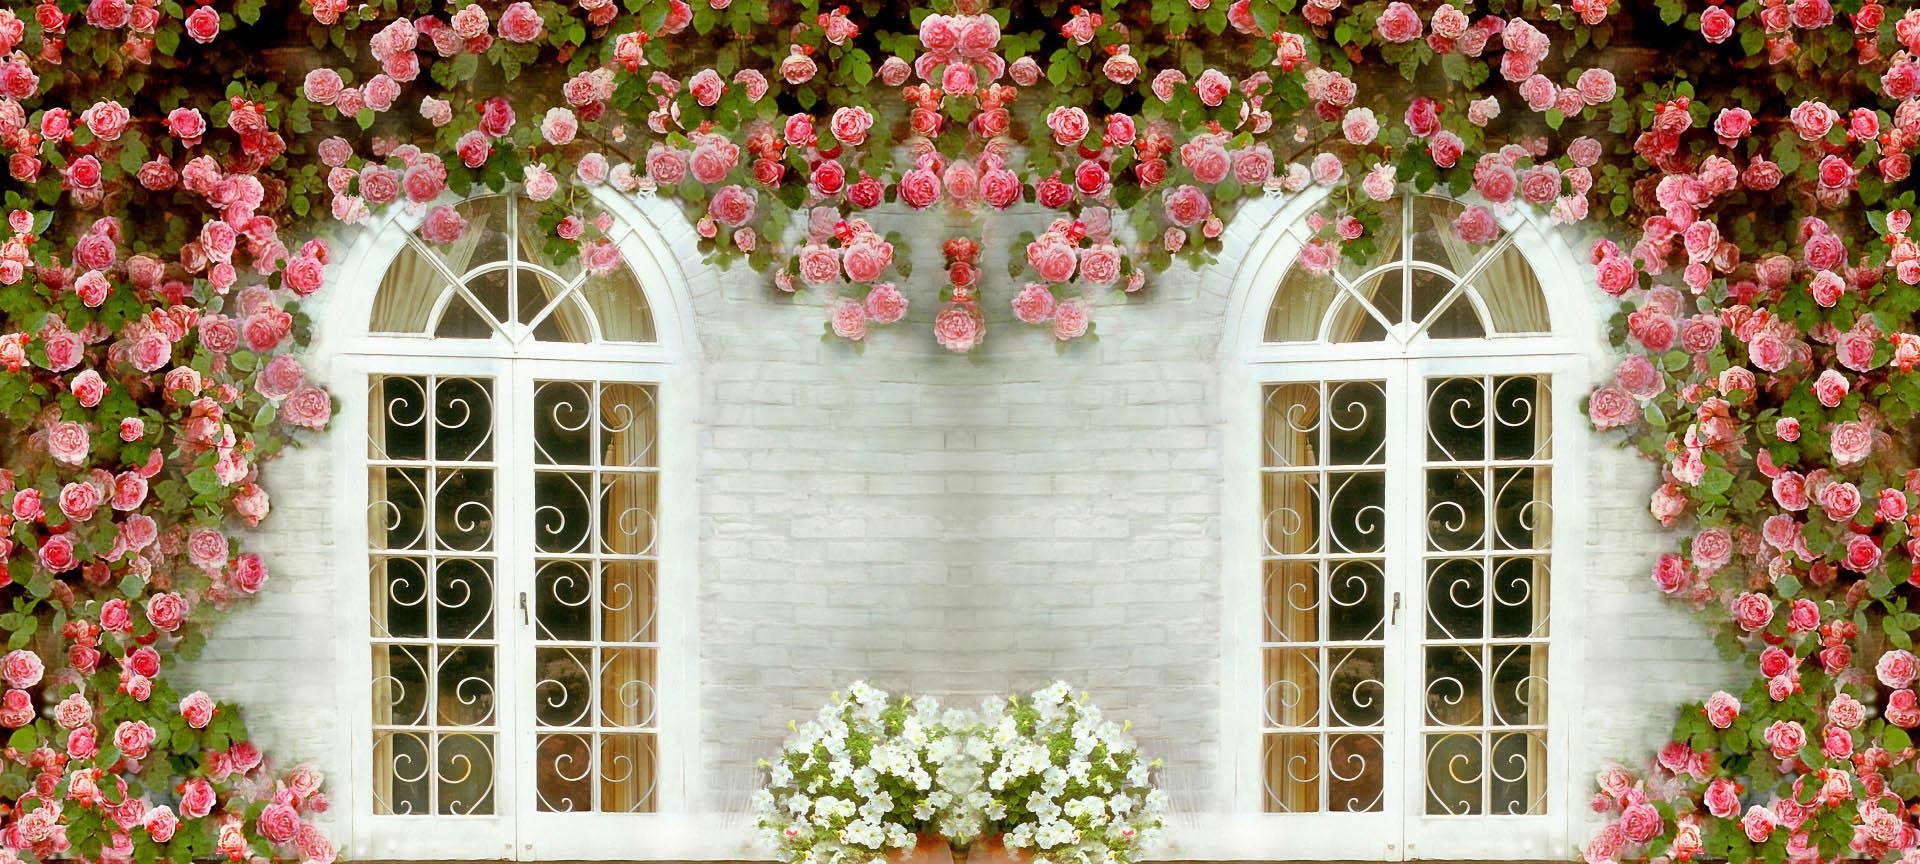 Стена с окном и цветами